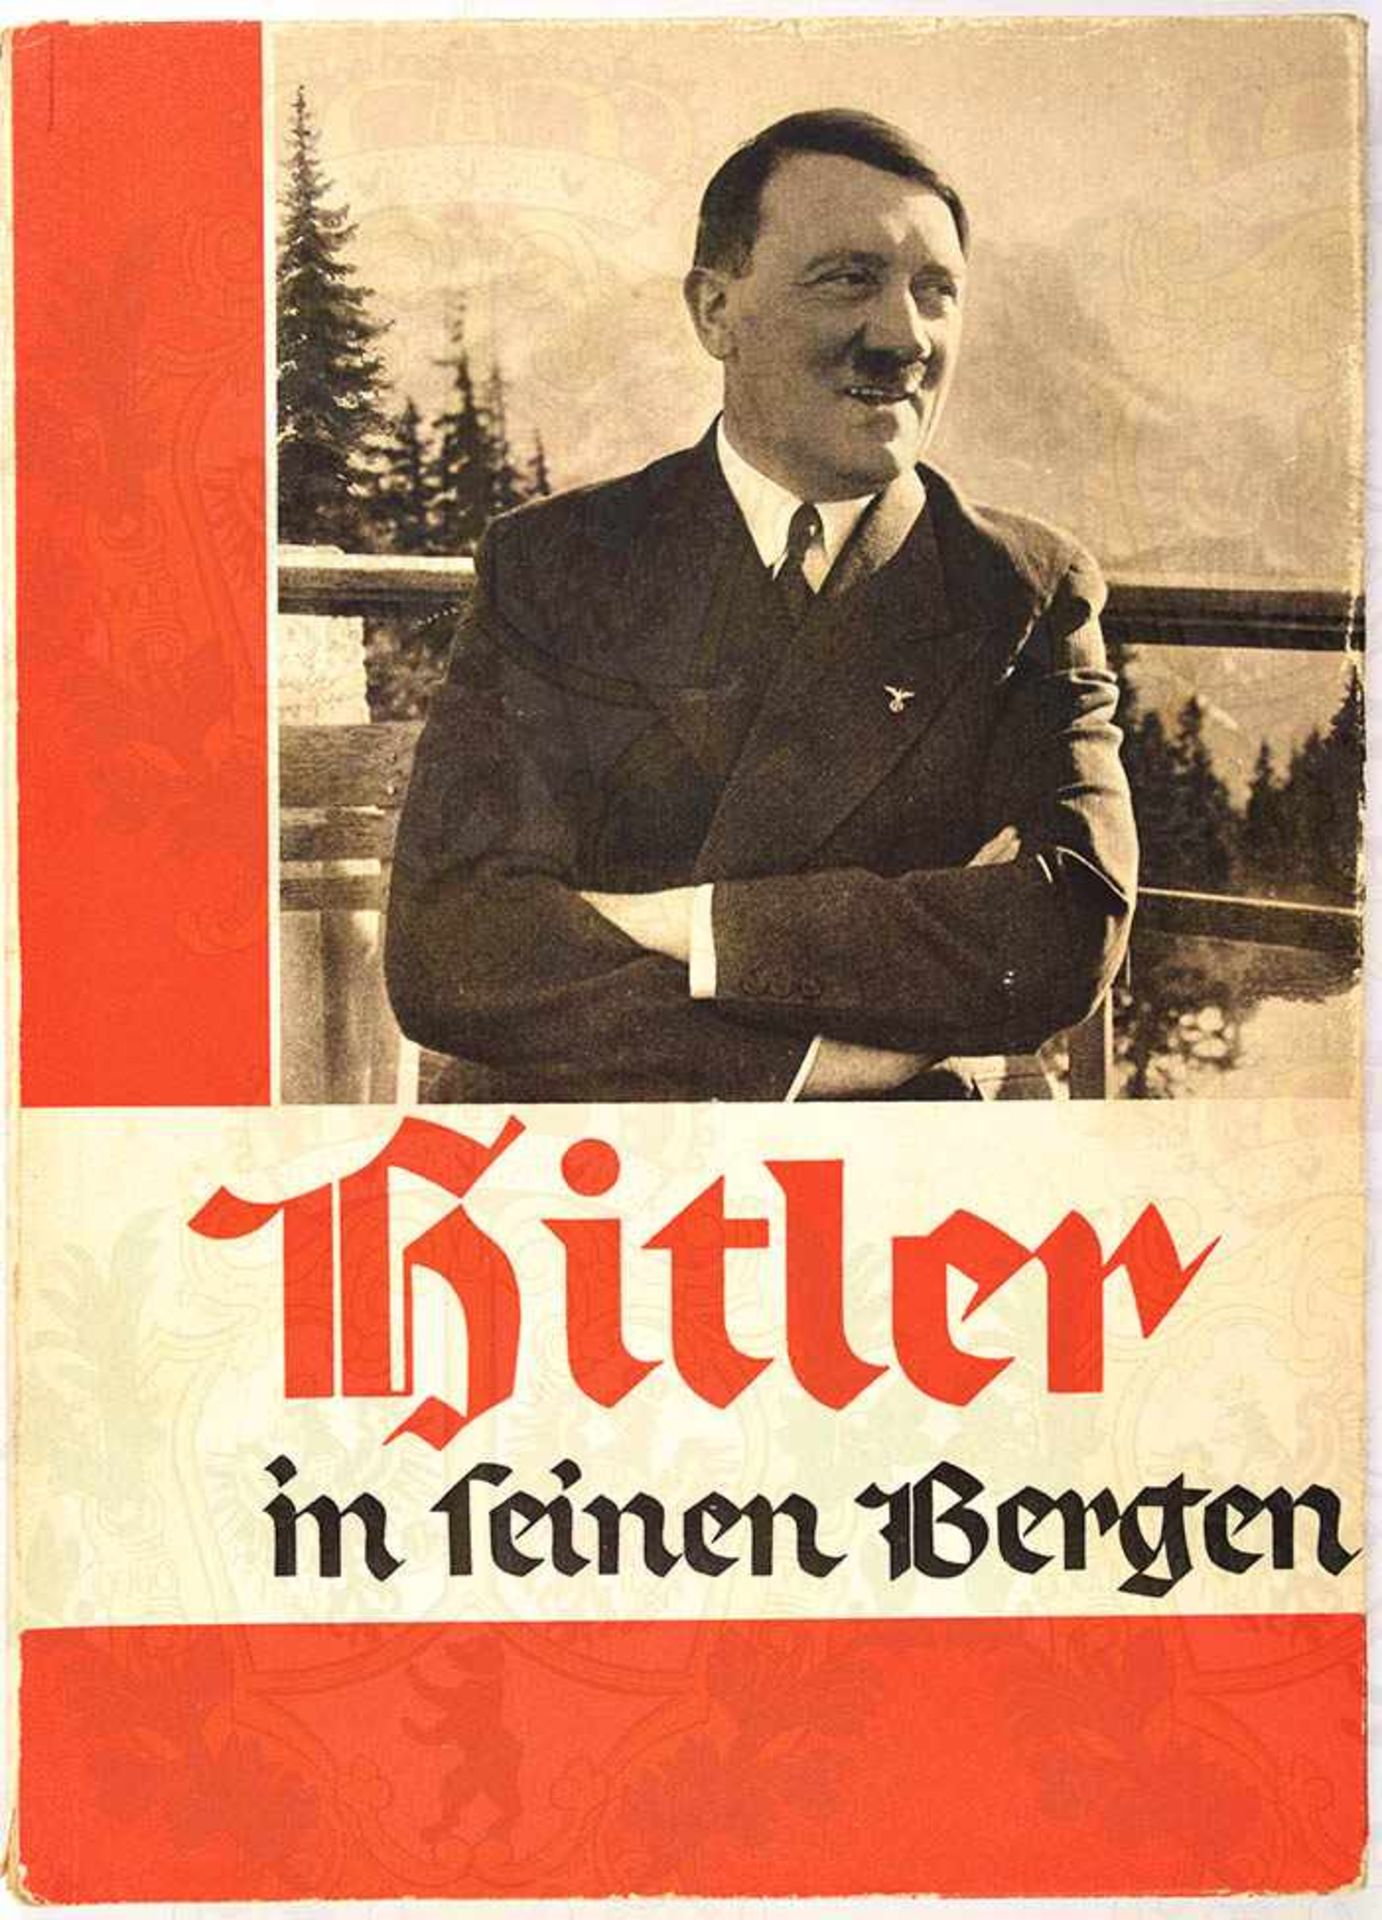 HITLER IN SEINEN BERGEN, Hoffmann-Fotoband 1935, 96 S., kart., SU m. leichten Gebrauchsspuren